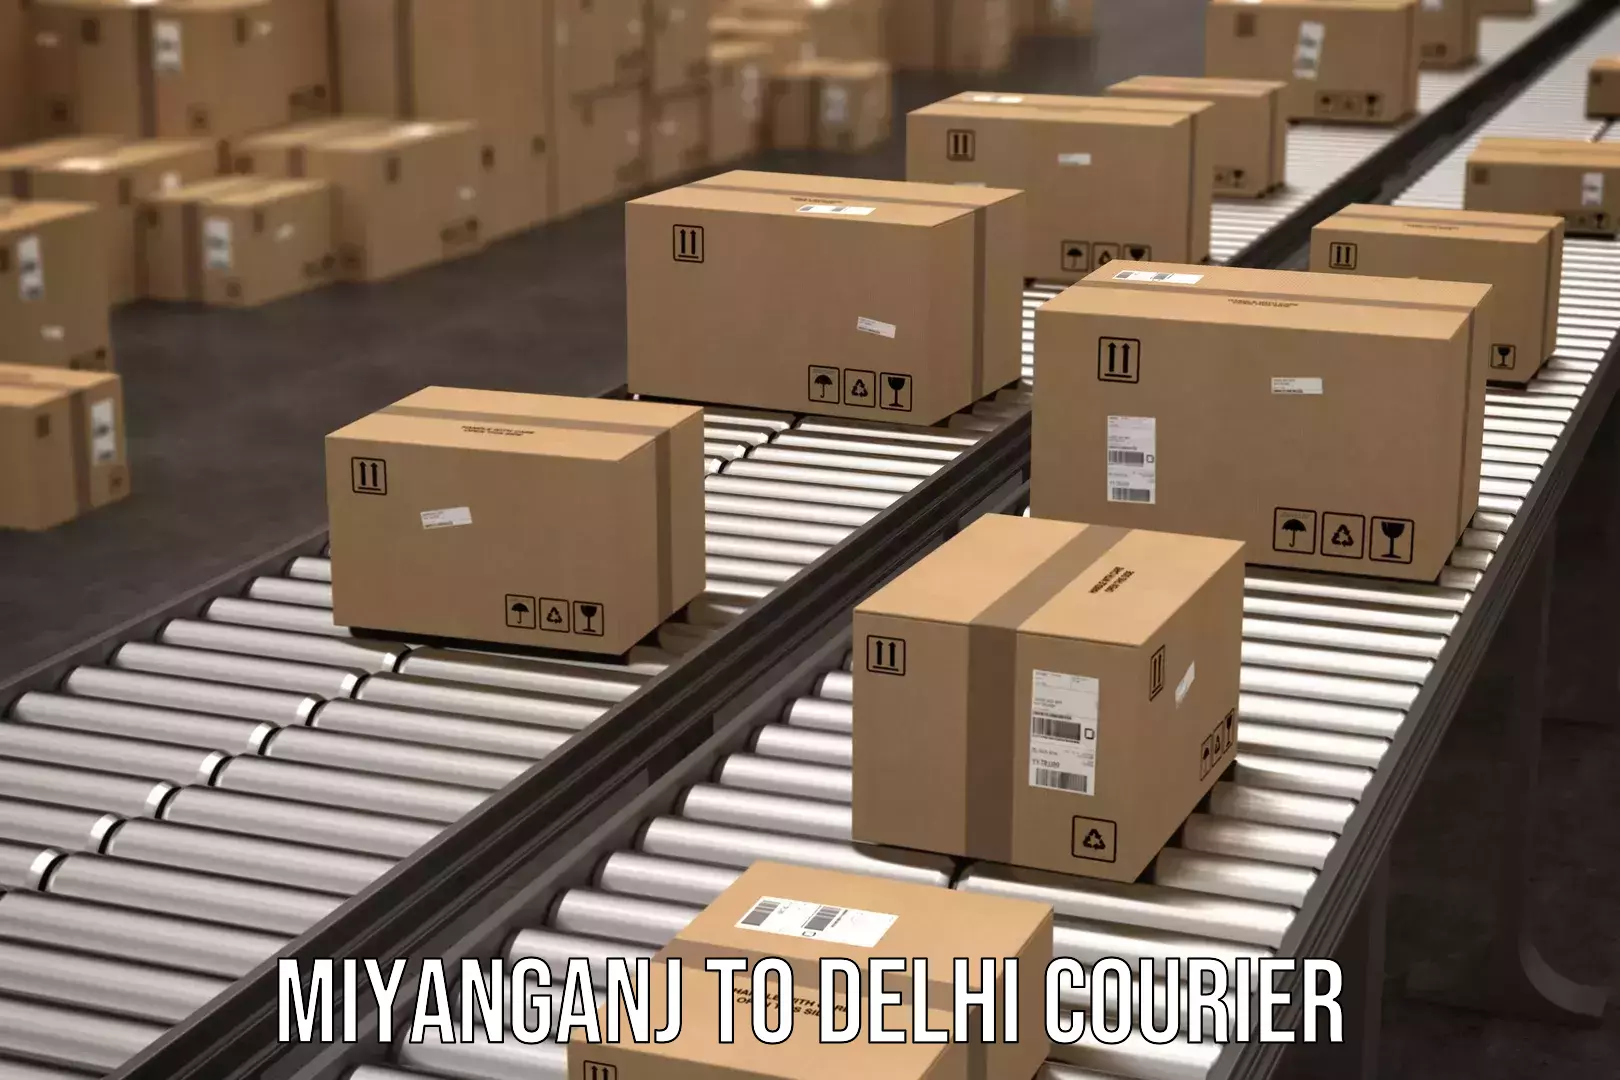 Supply chain efficiency Miyanganj to Burari